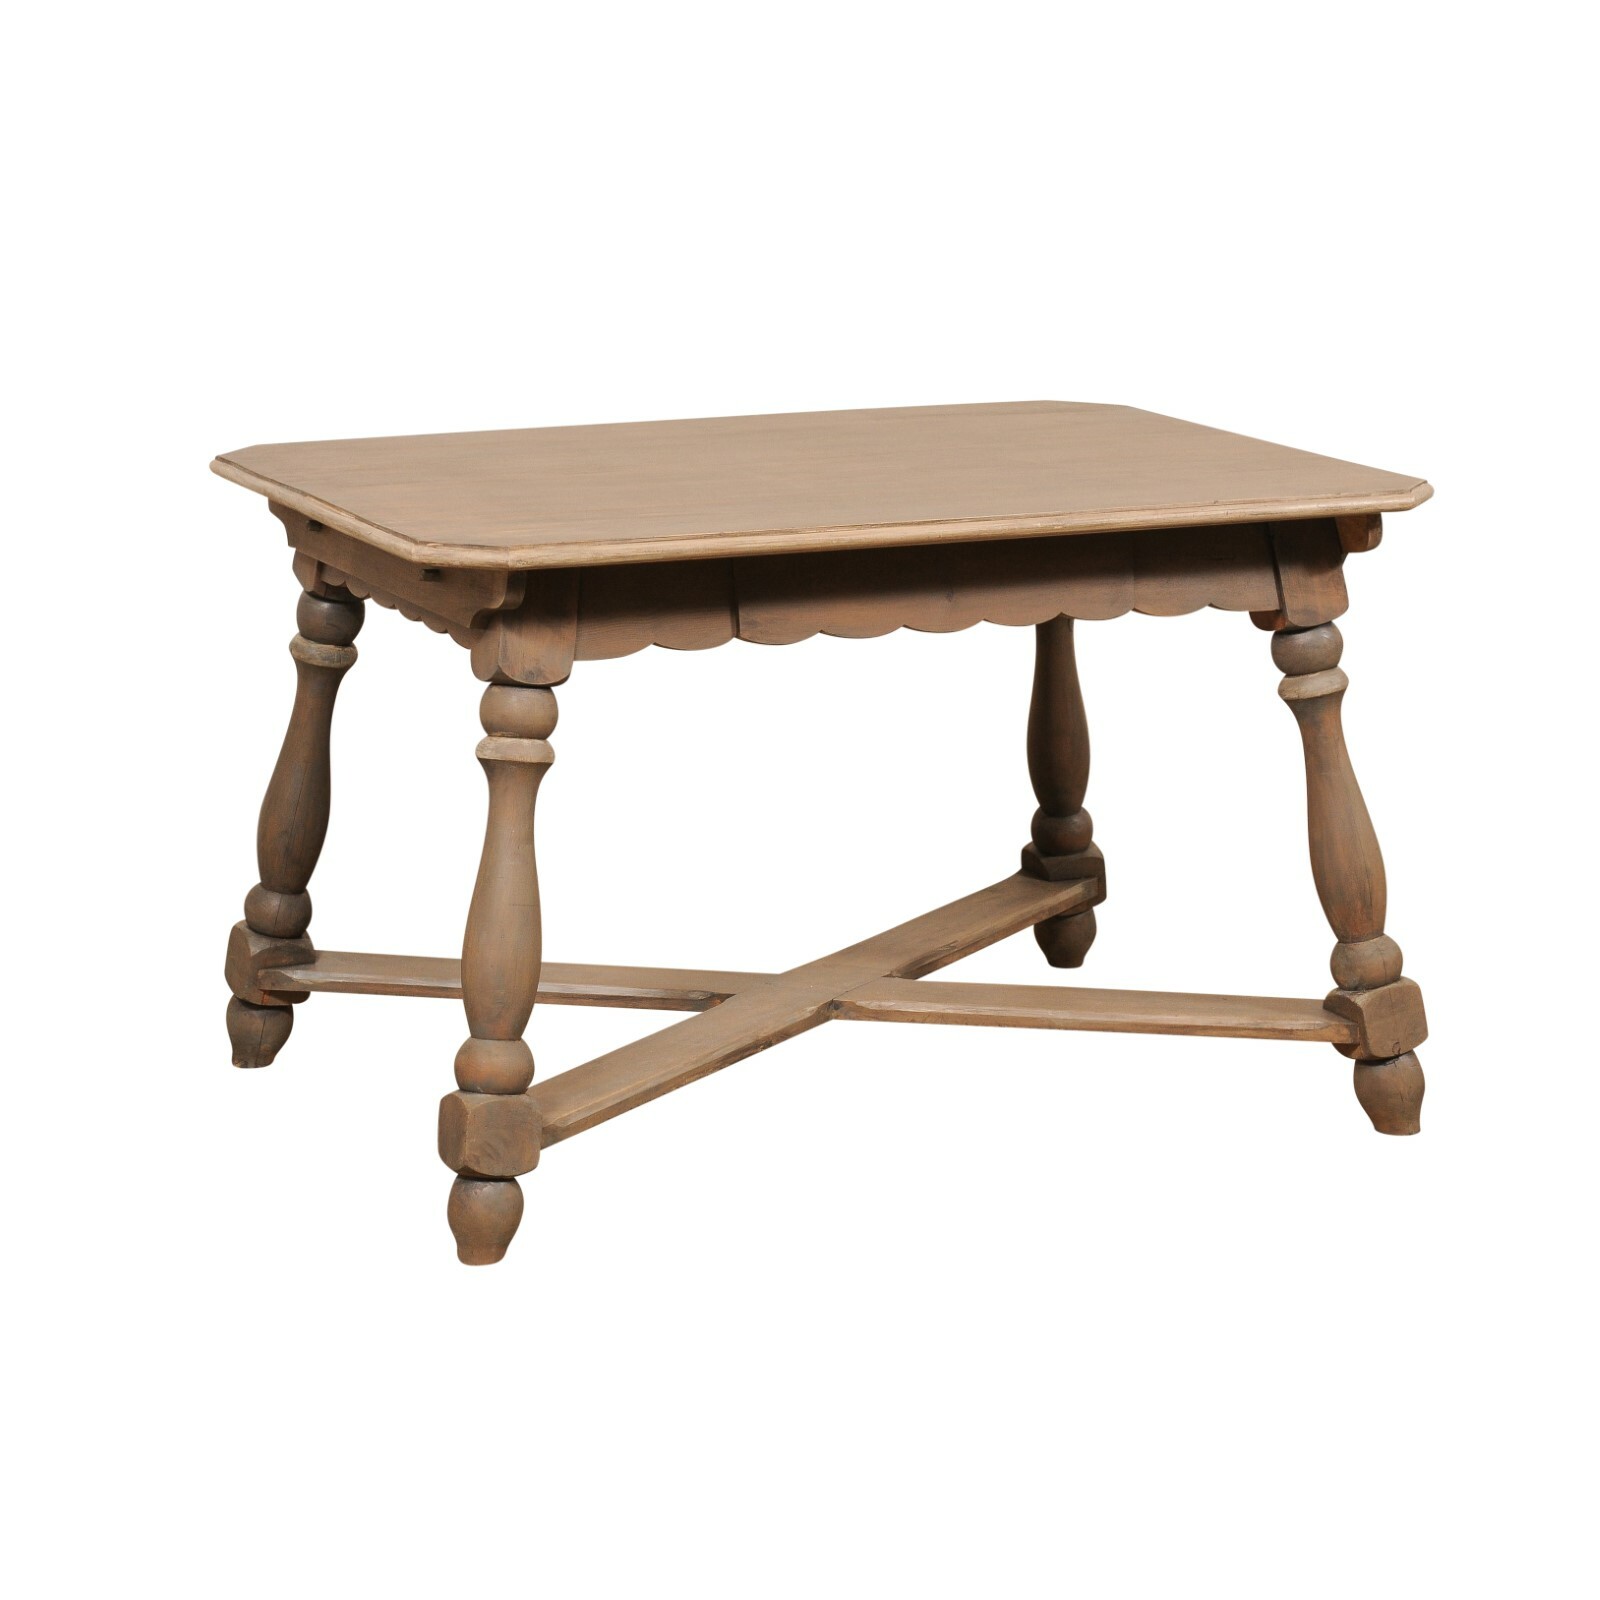 European Wooden Table w/Scalloped Apron